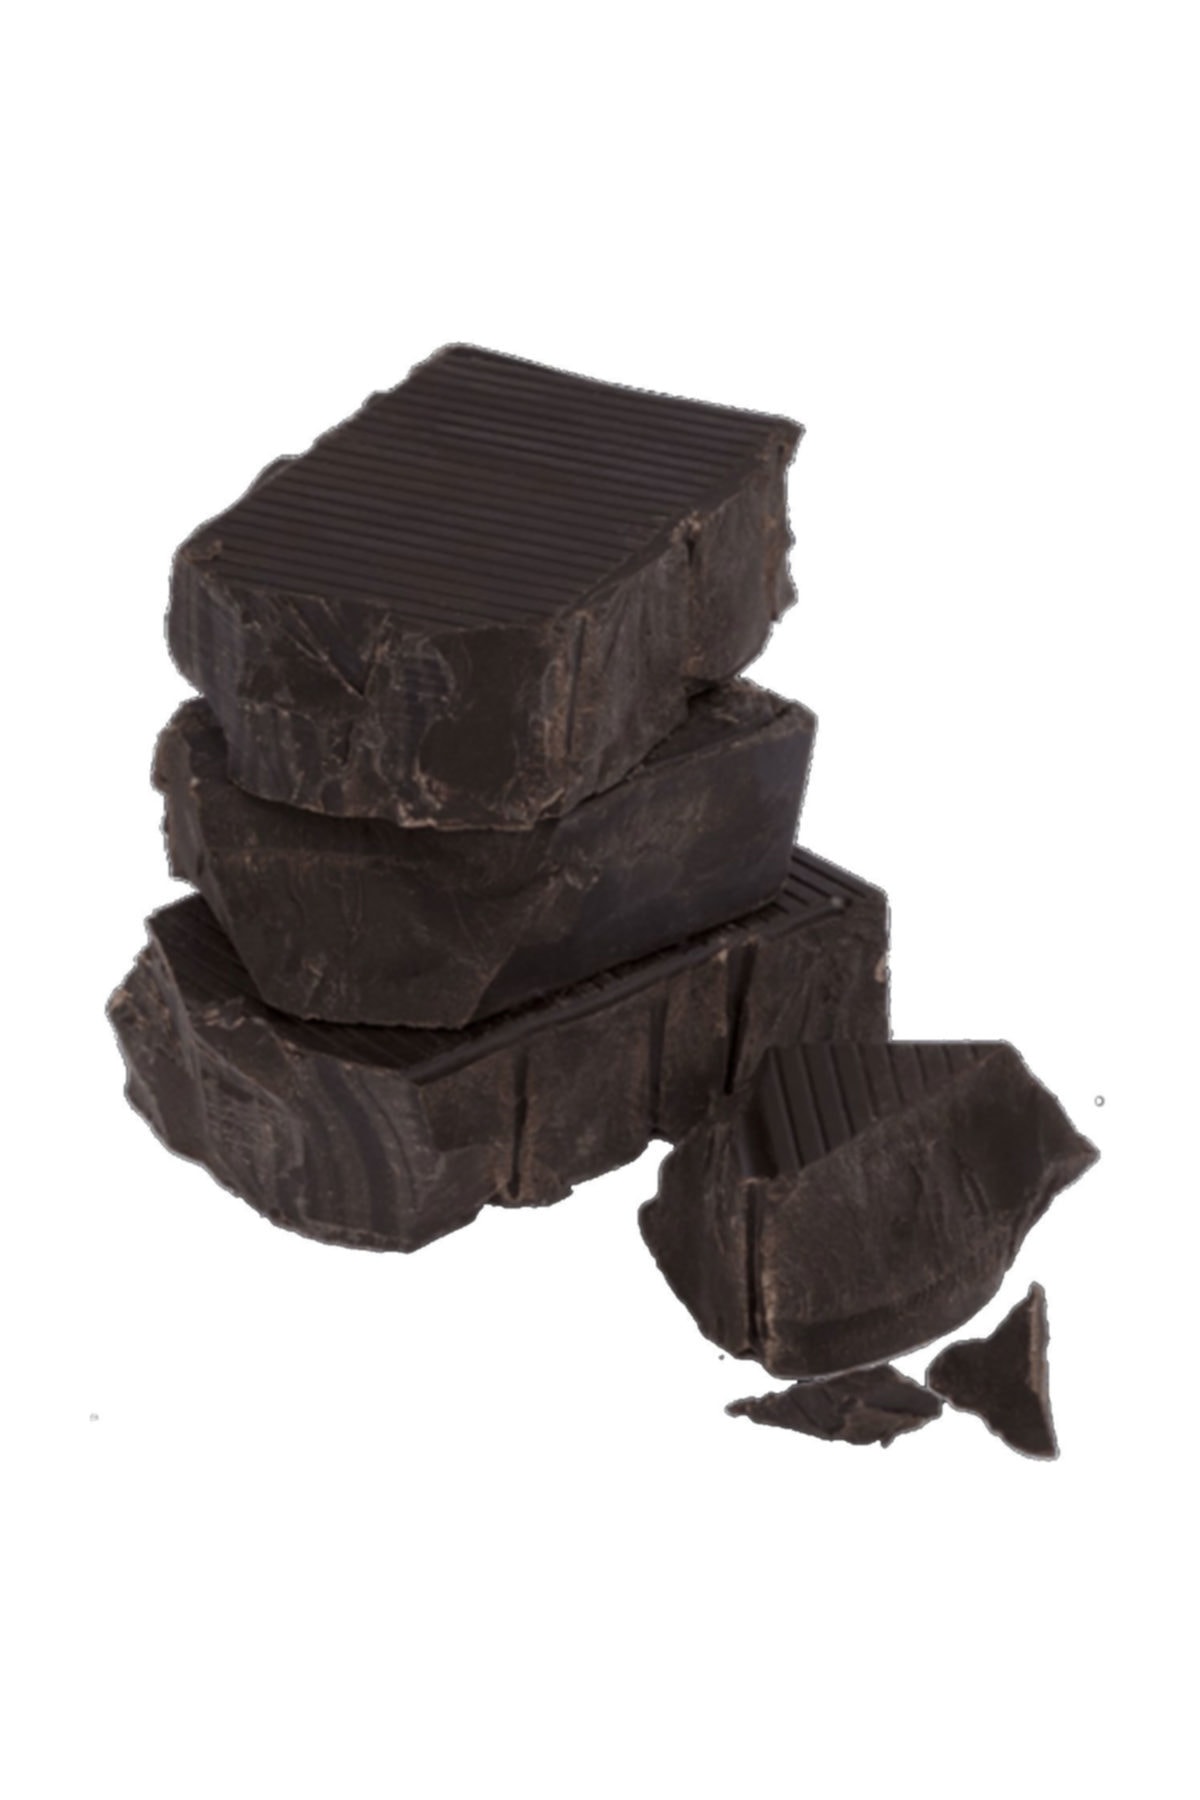 TT Tahtakale Toptancıları Bitter Kuvertür Çikolata Eritmelik Kalıp Çikolata 2.5 Kg BY10798